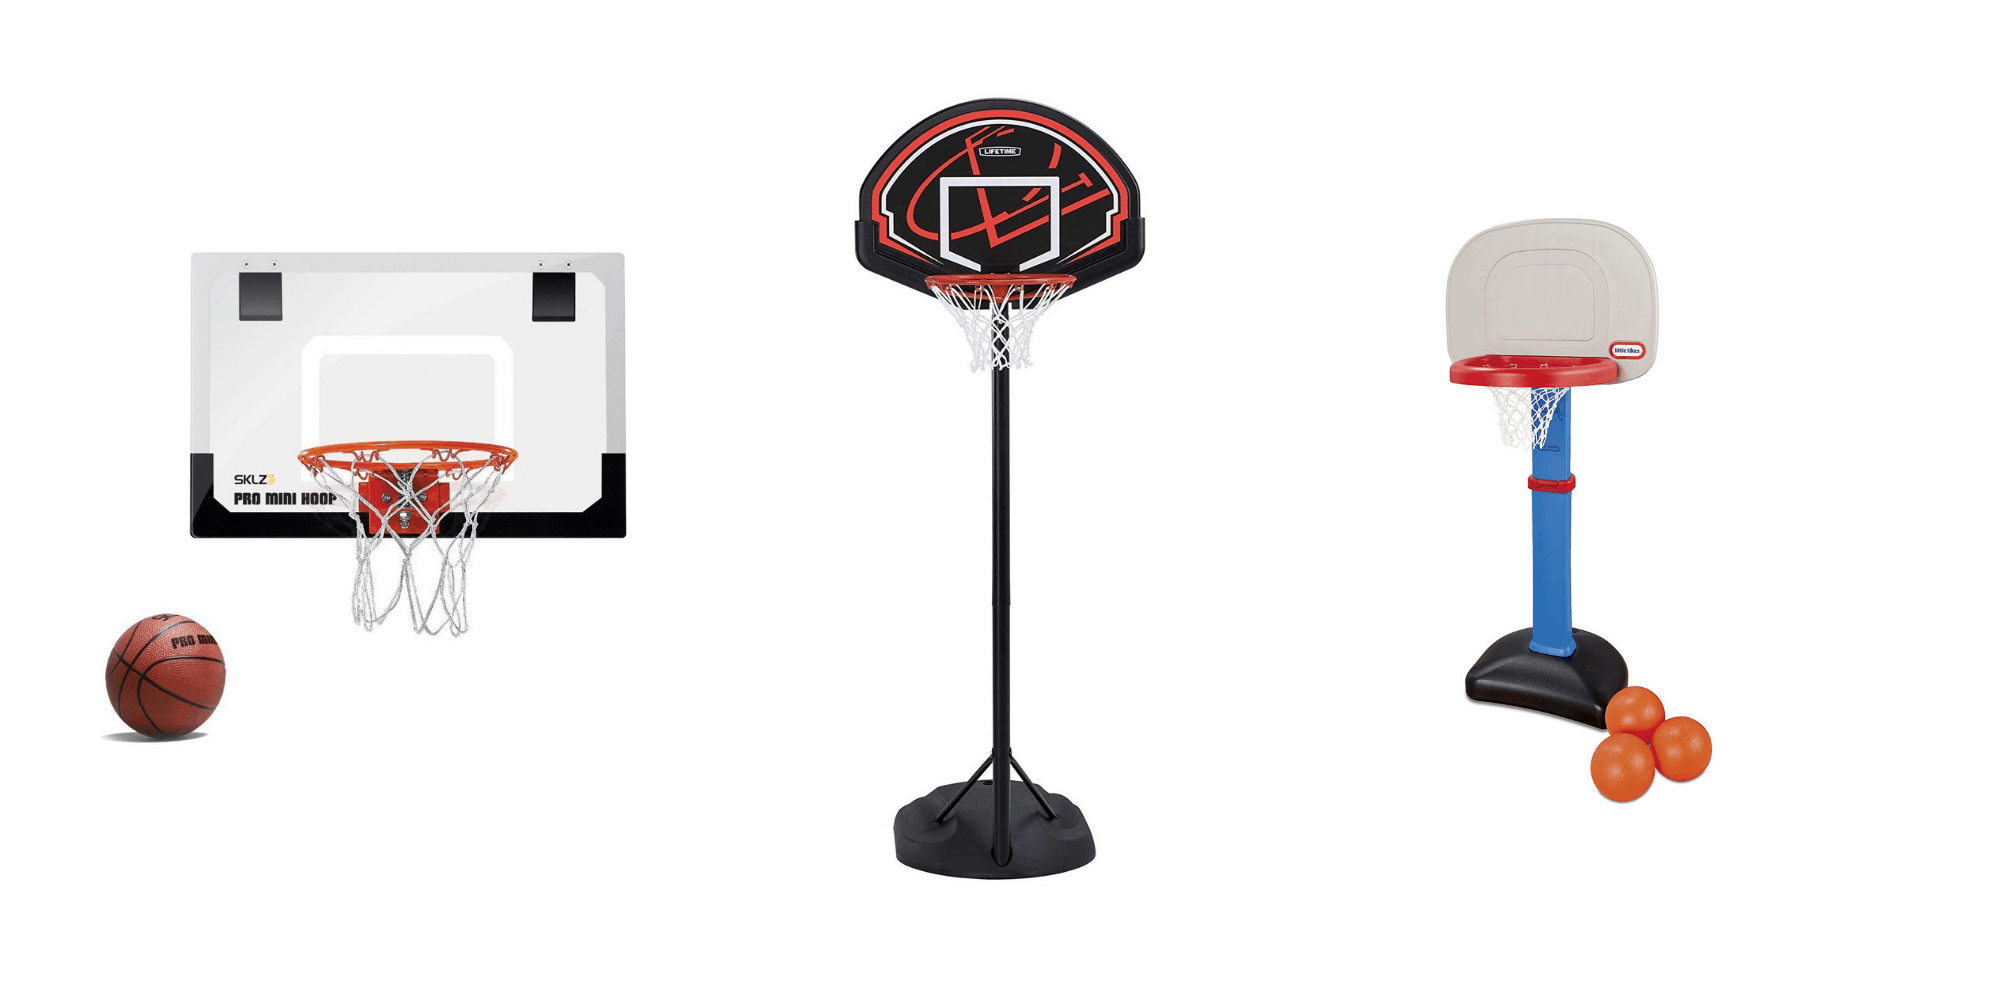 Basketball Ziel Hoop Rim Net Wand montiert faltbare Spielzeug für Kids T2O6 C1F6 